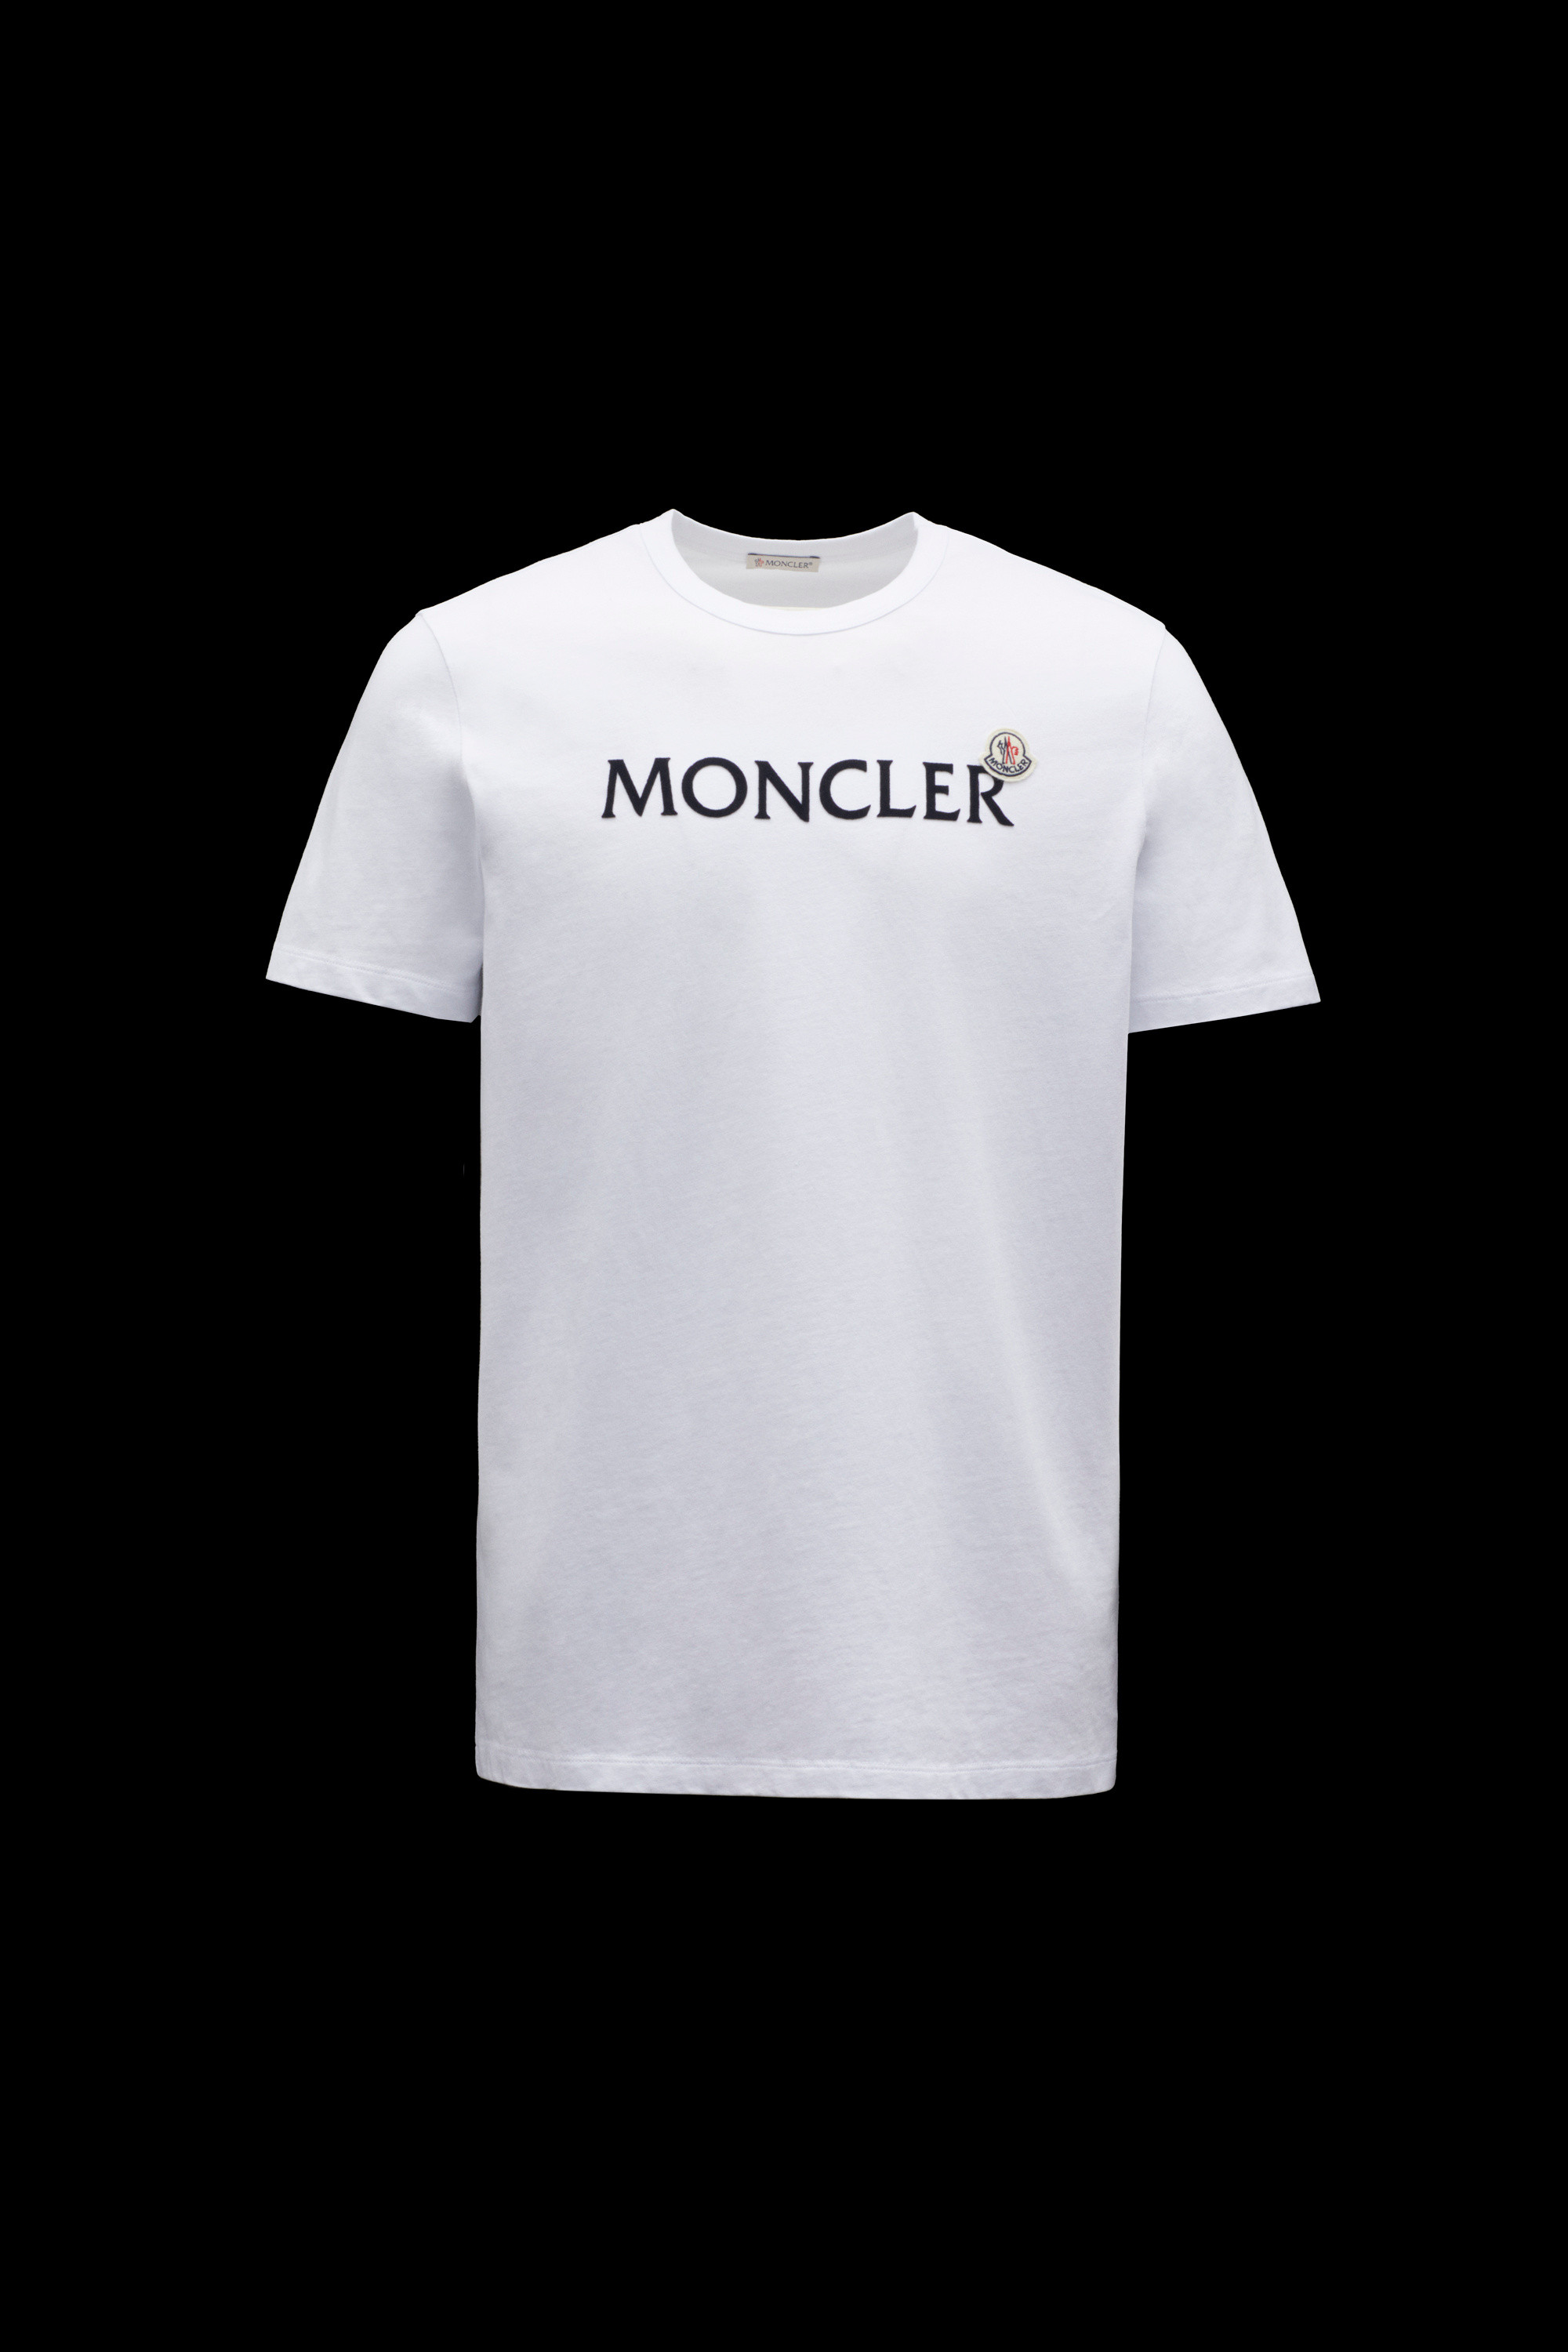 moncler logo t shirt Off 74% - www.gmcanantnag.net